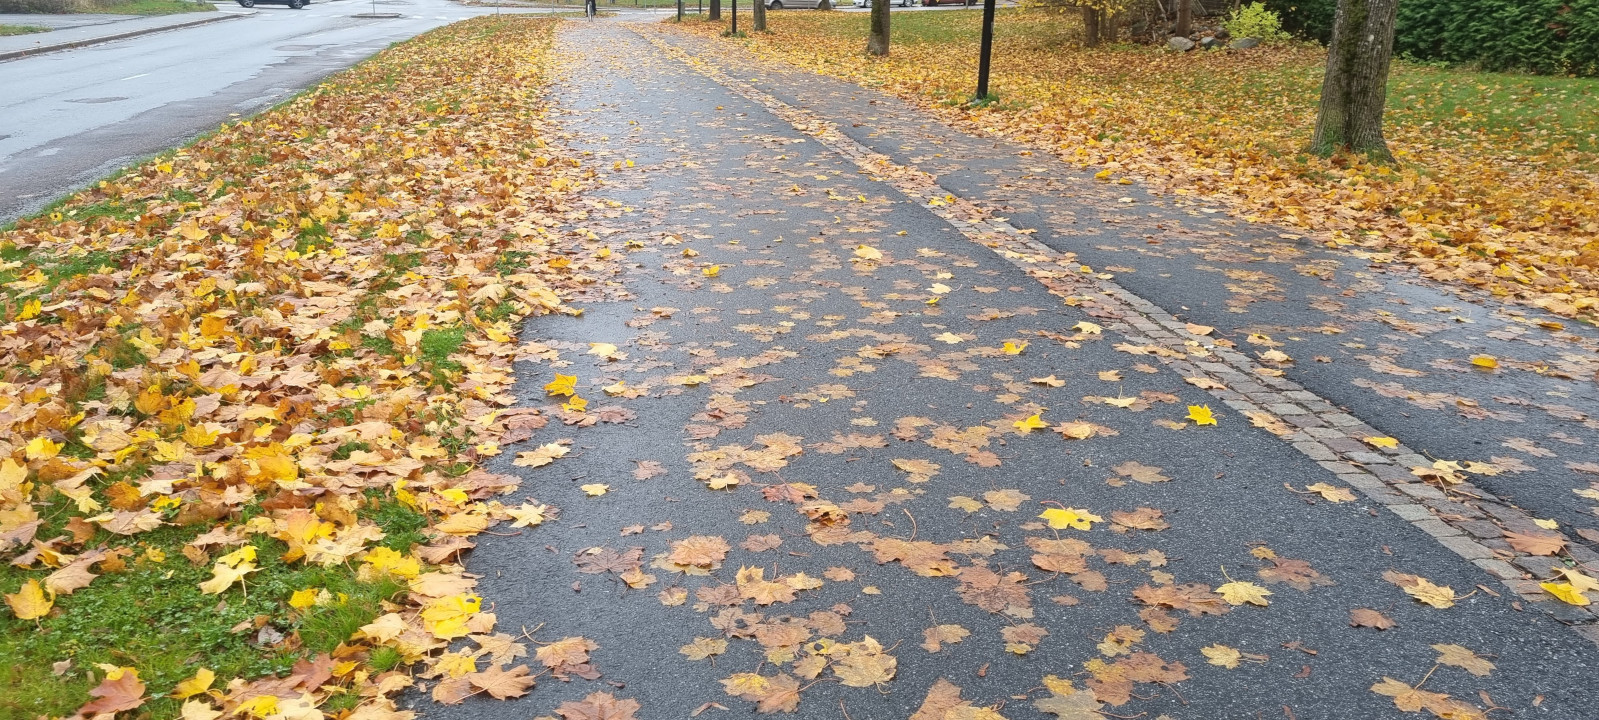 Outra via de bicicletas, coberta por folhas no chão.